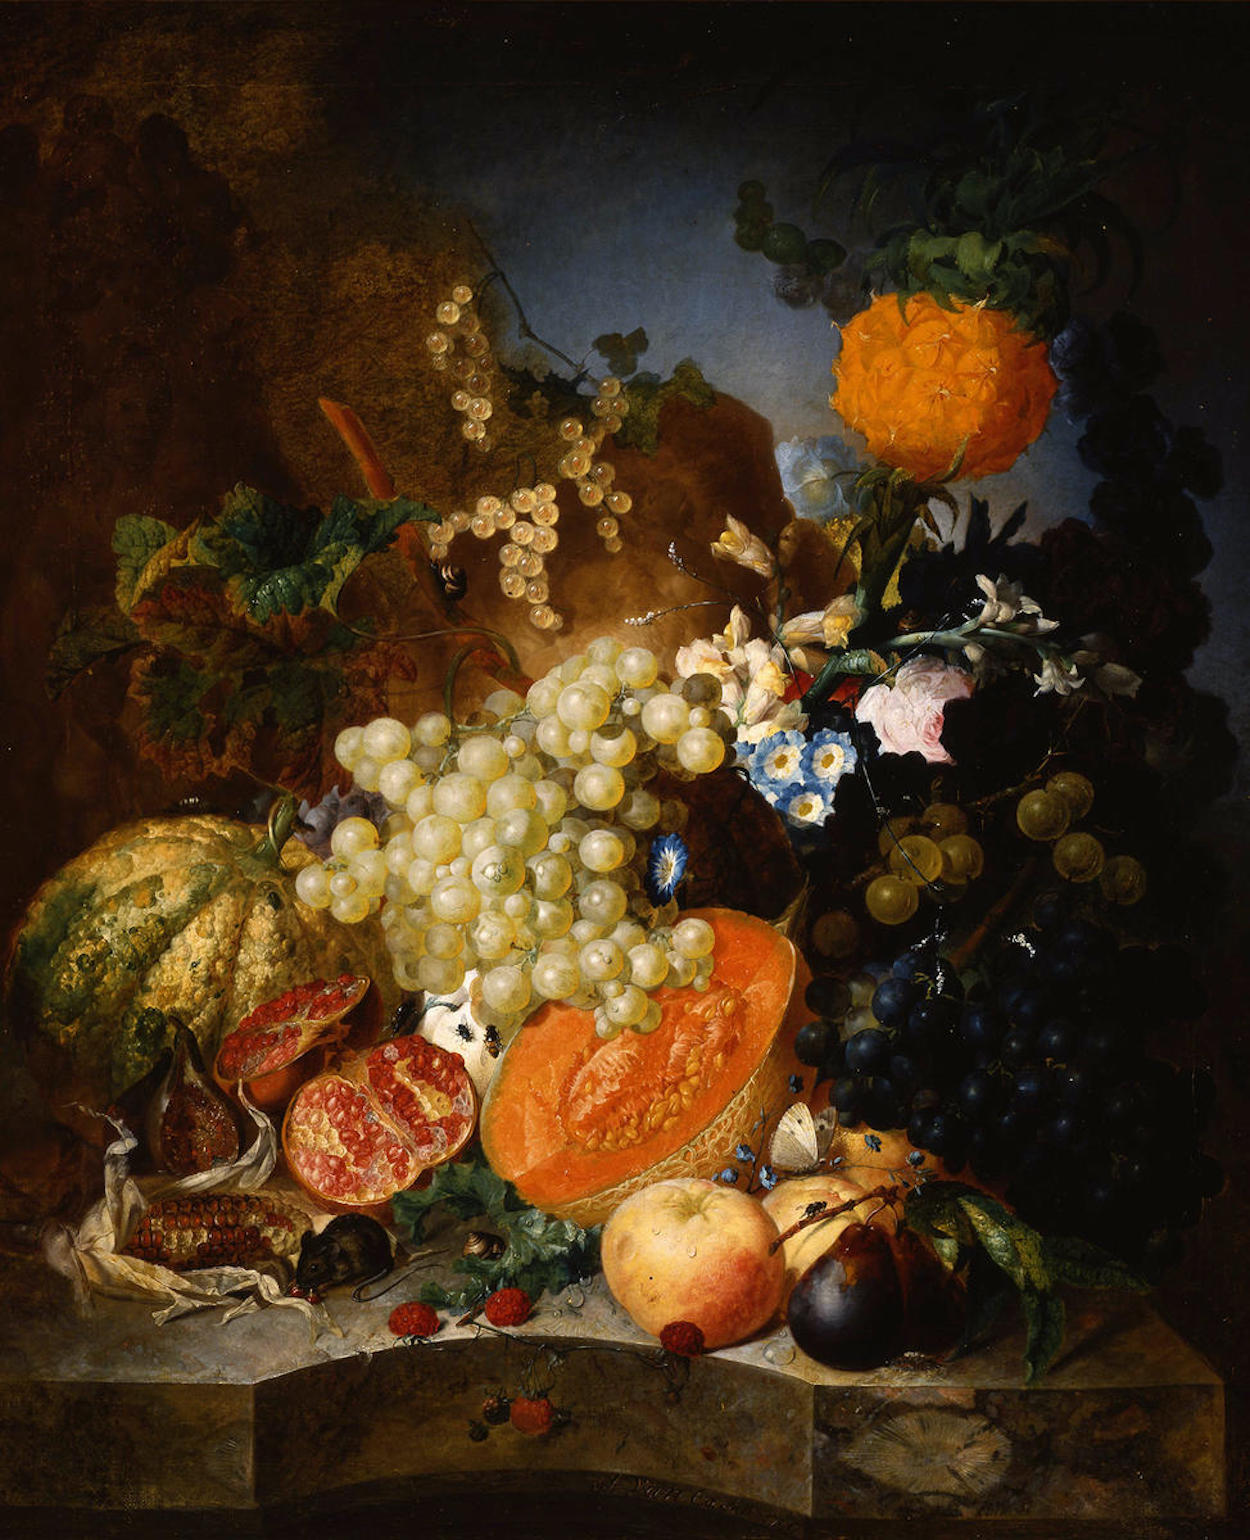 과일이 있는 정물(Still Life with Fruit) by Jan van Os - 1769년 - 69.9 x 57.8 cm 